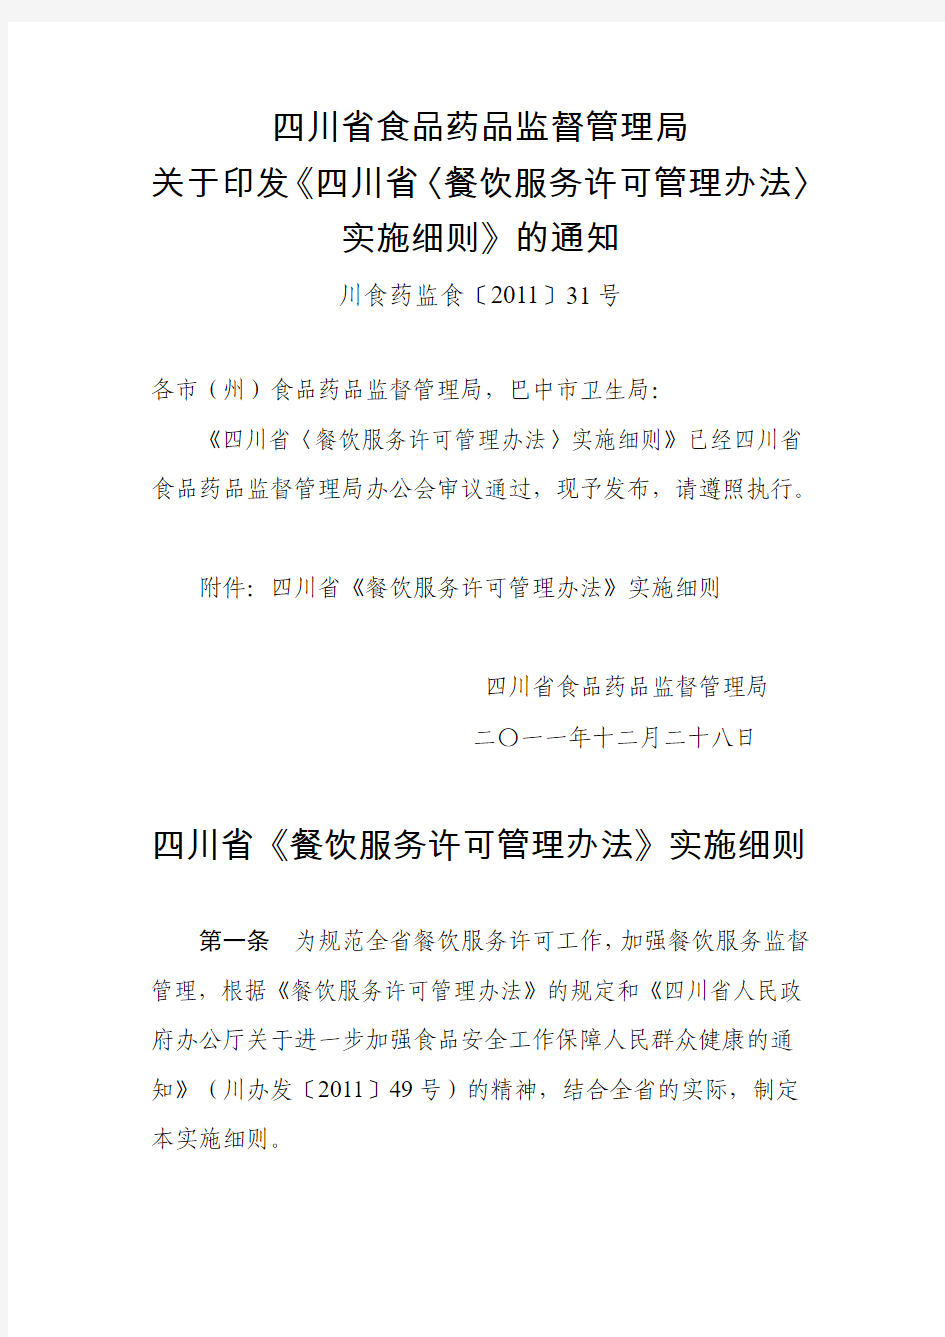 四川省《餐饮服务许可管理办法》实施细则